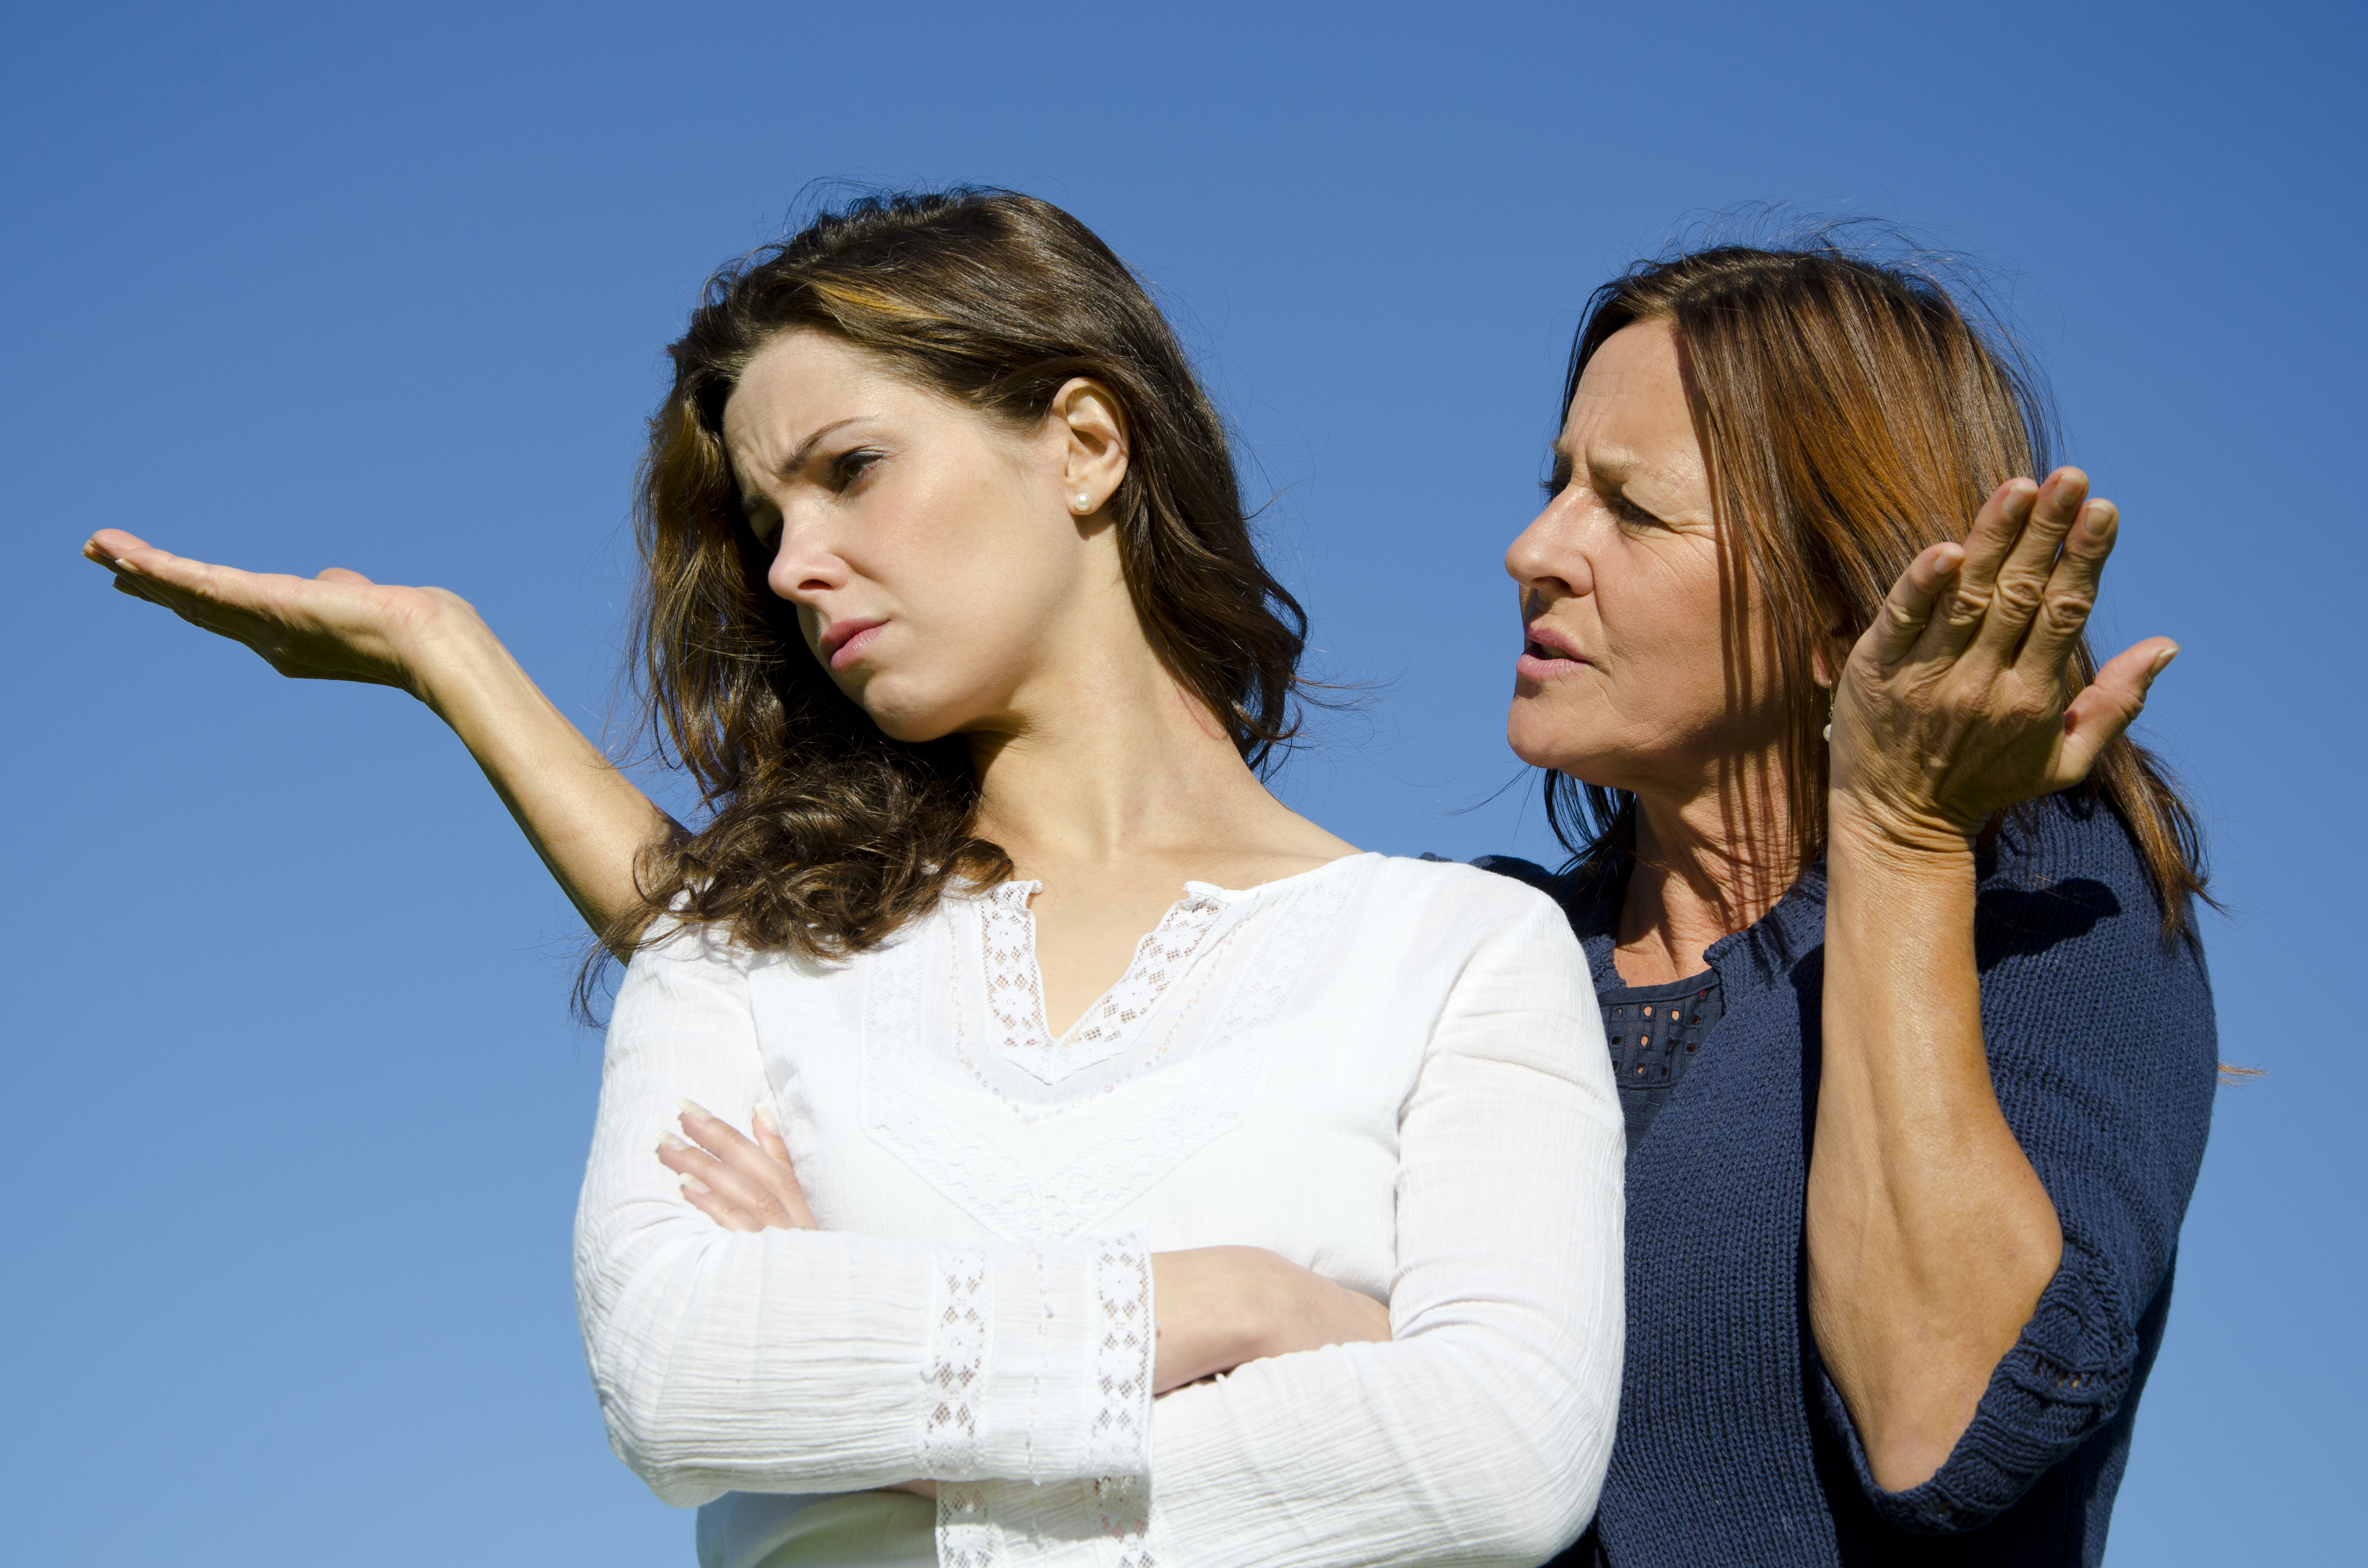 Une mère et sa fille se disputent | Source : Shutterstock